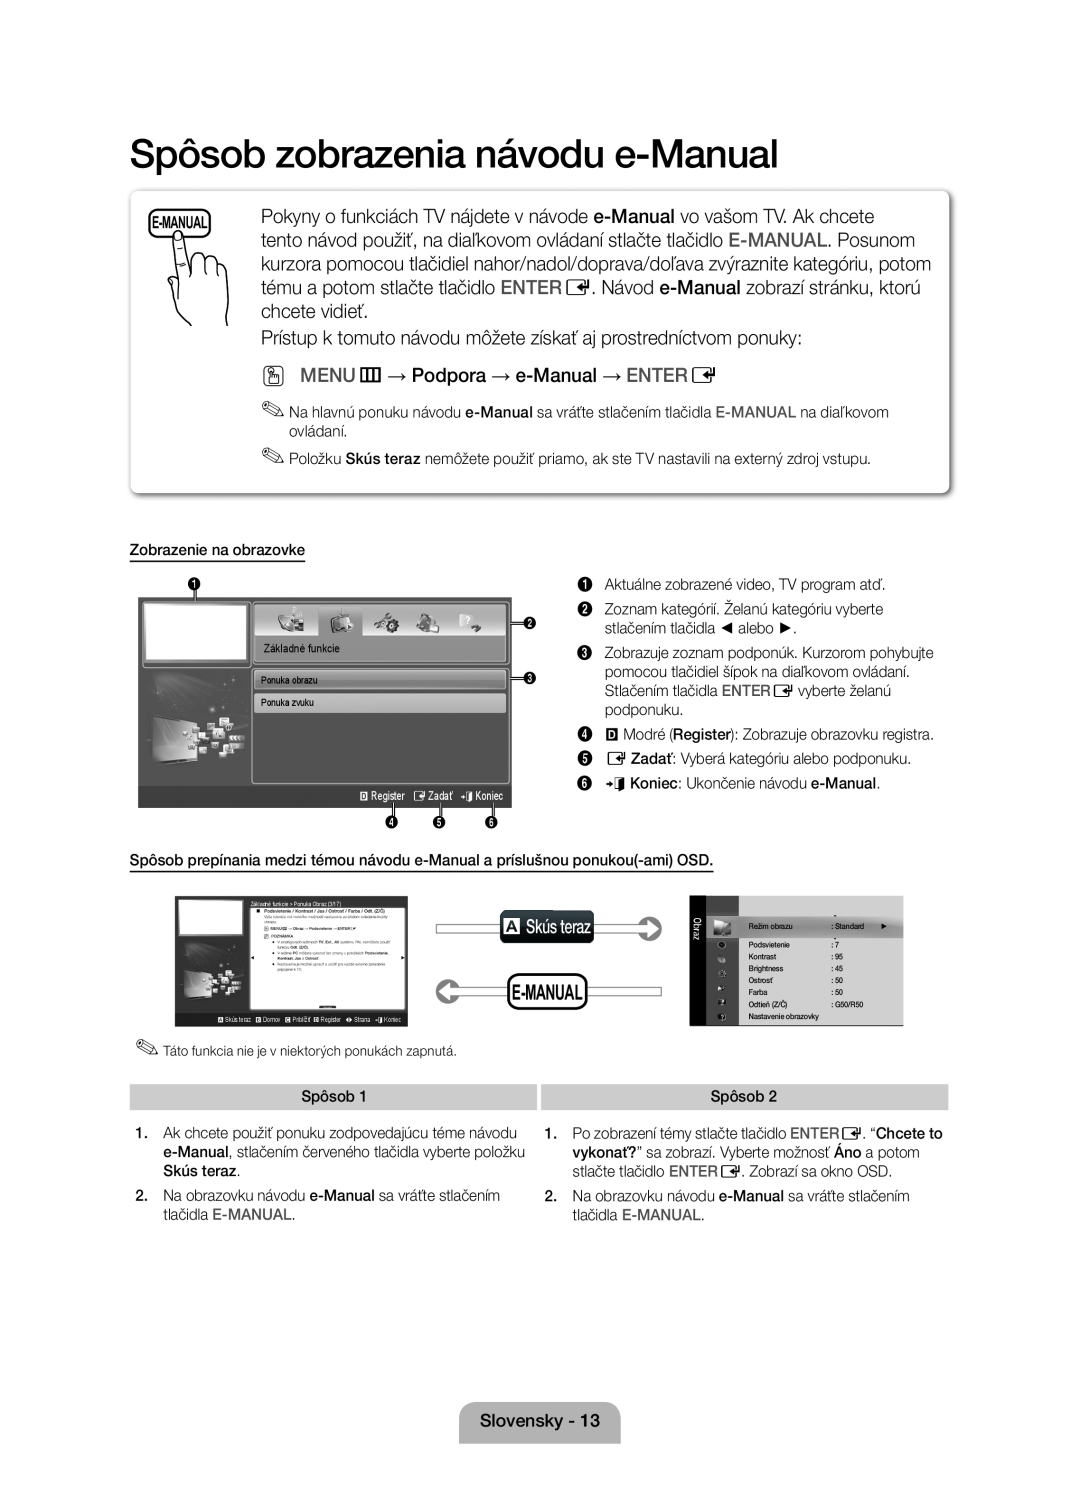 Samsung UE37D5000PWXZG, UE32D5000PWXZG manual Spôsob zobrazenia návodu e-Manual, chcete vidieť, aSkús teraz, E-Manual 